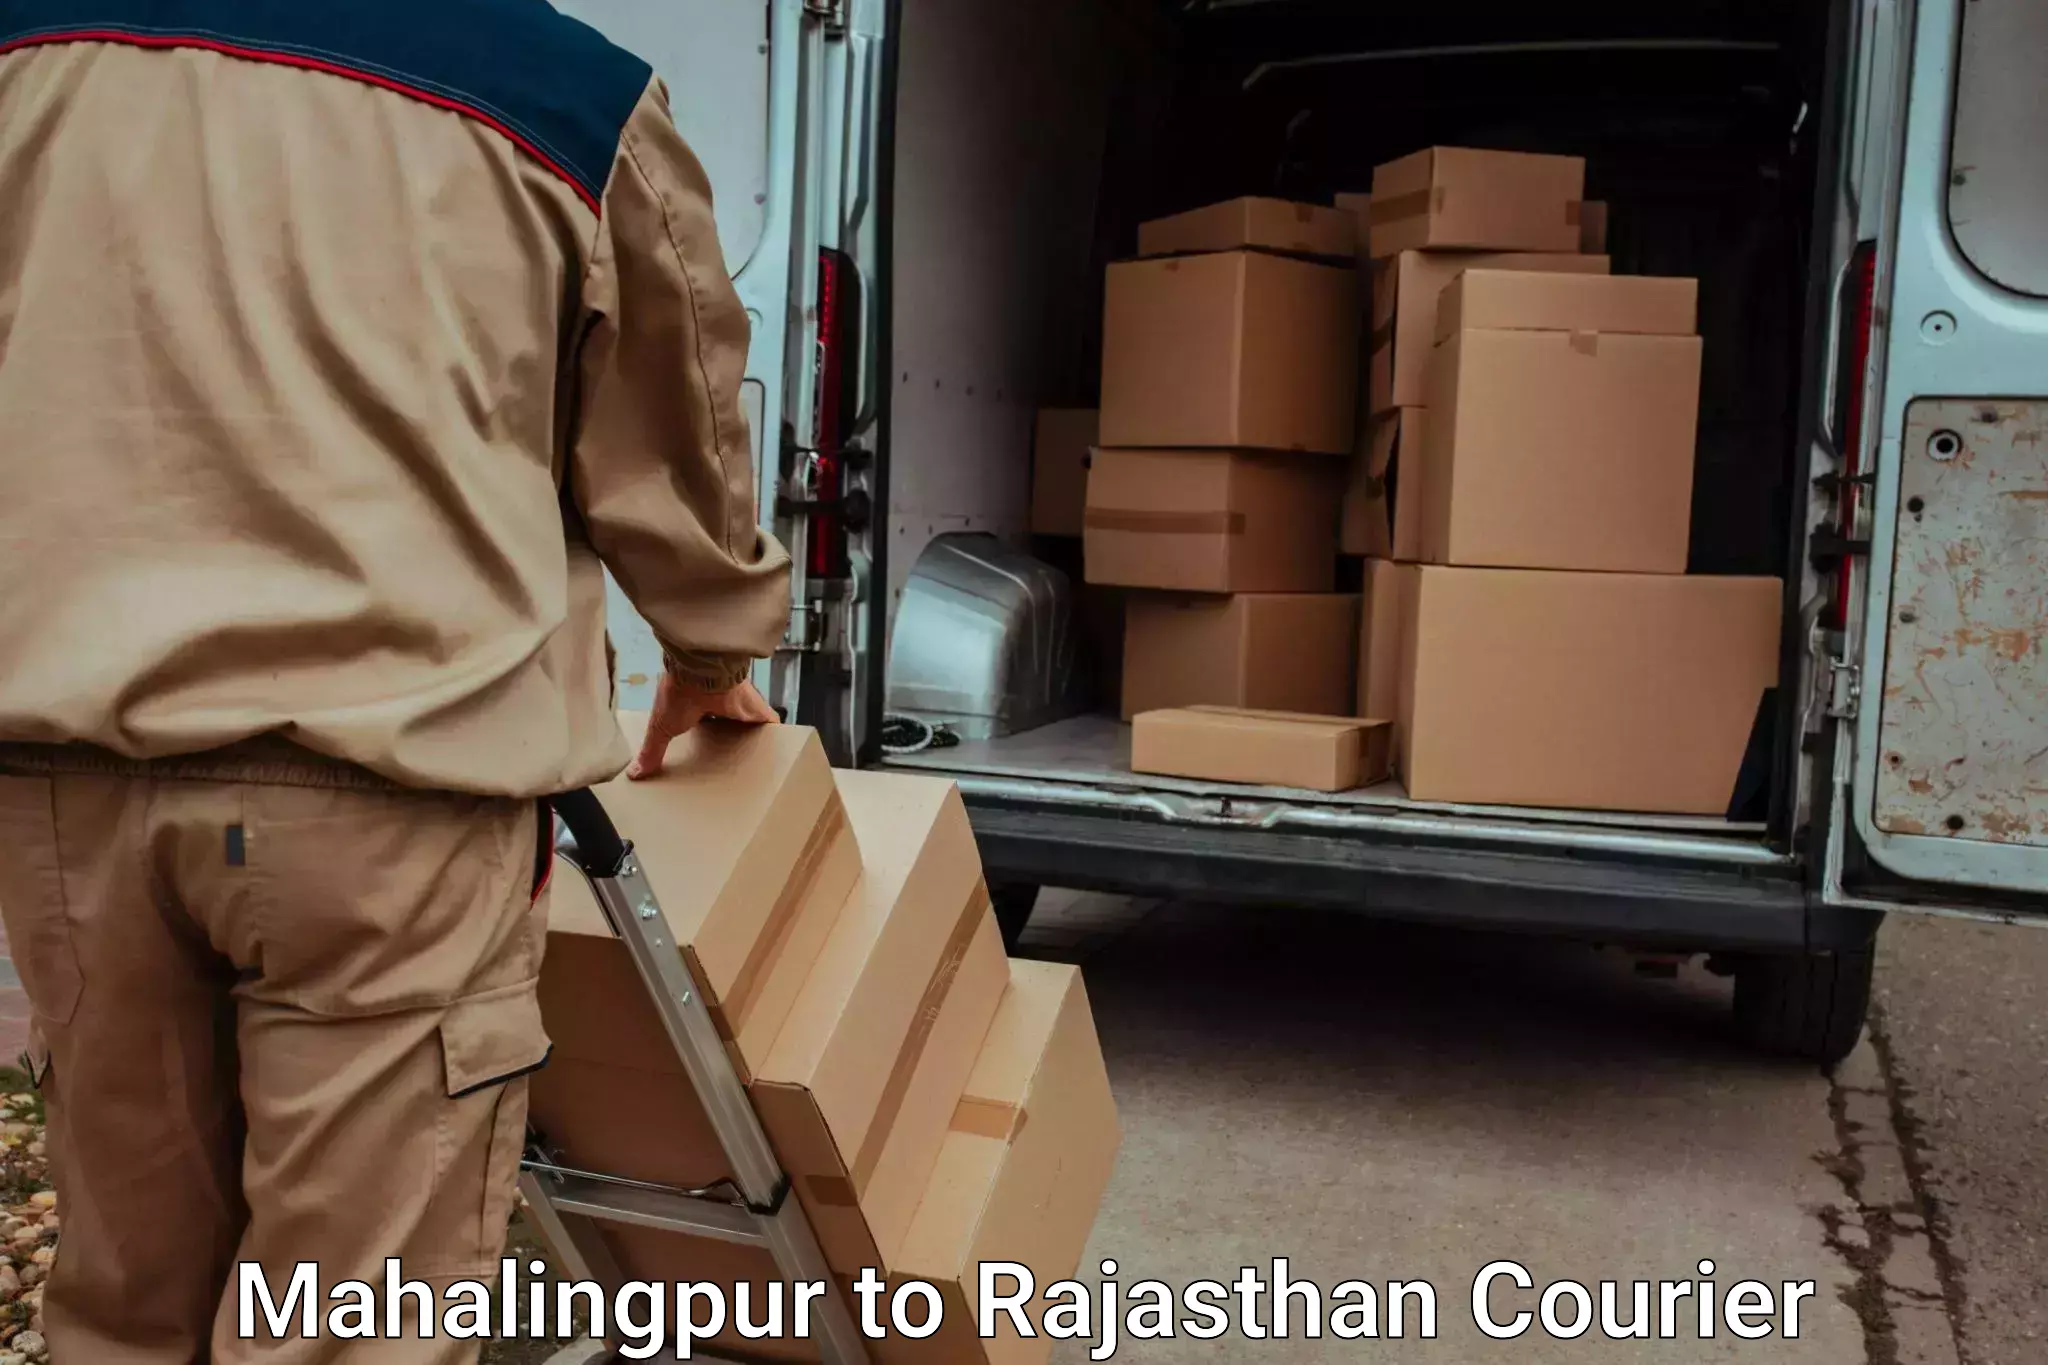 Baggage transport cost Mahalingpur to Mandalgarh